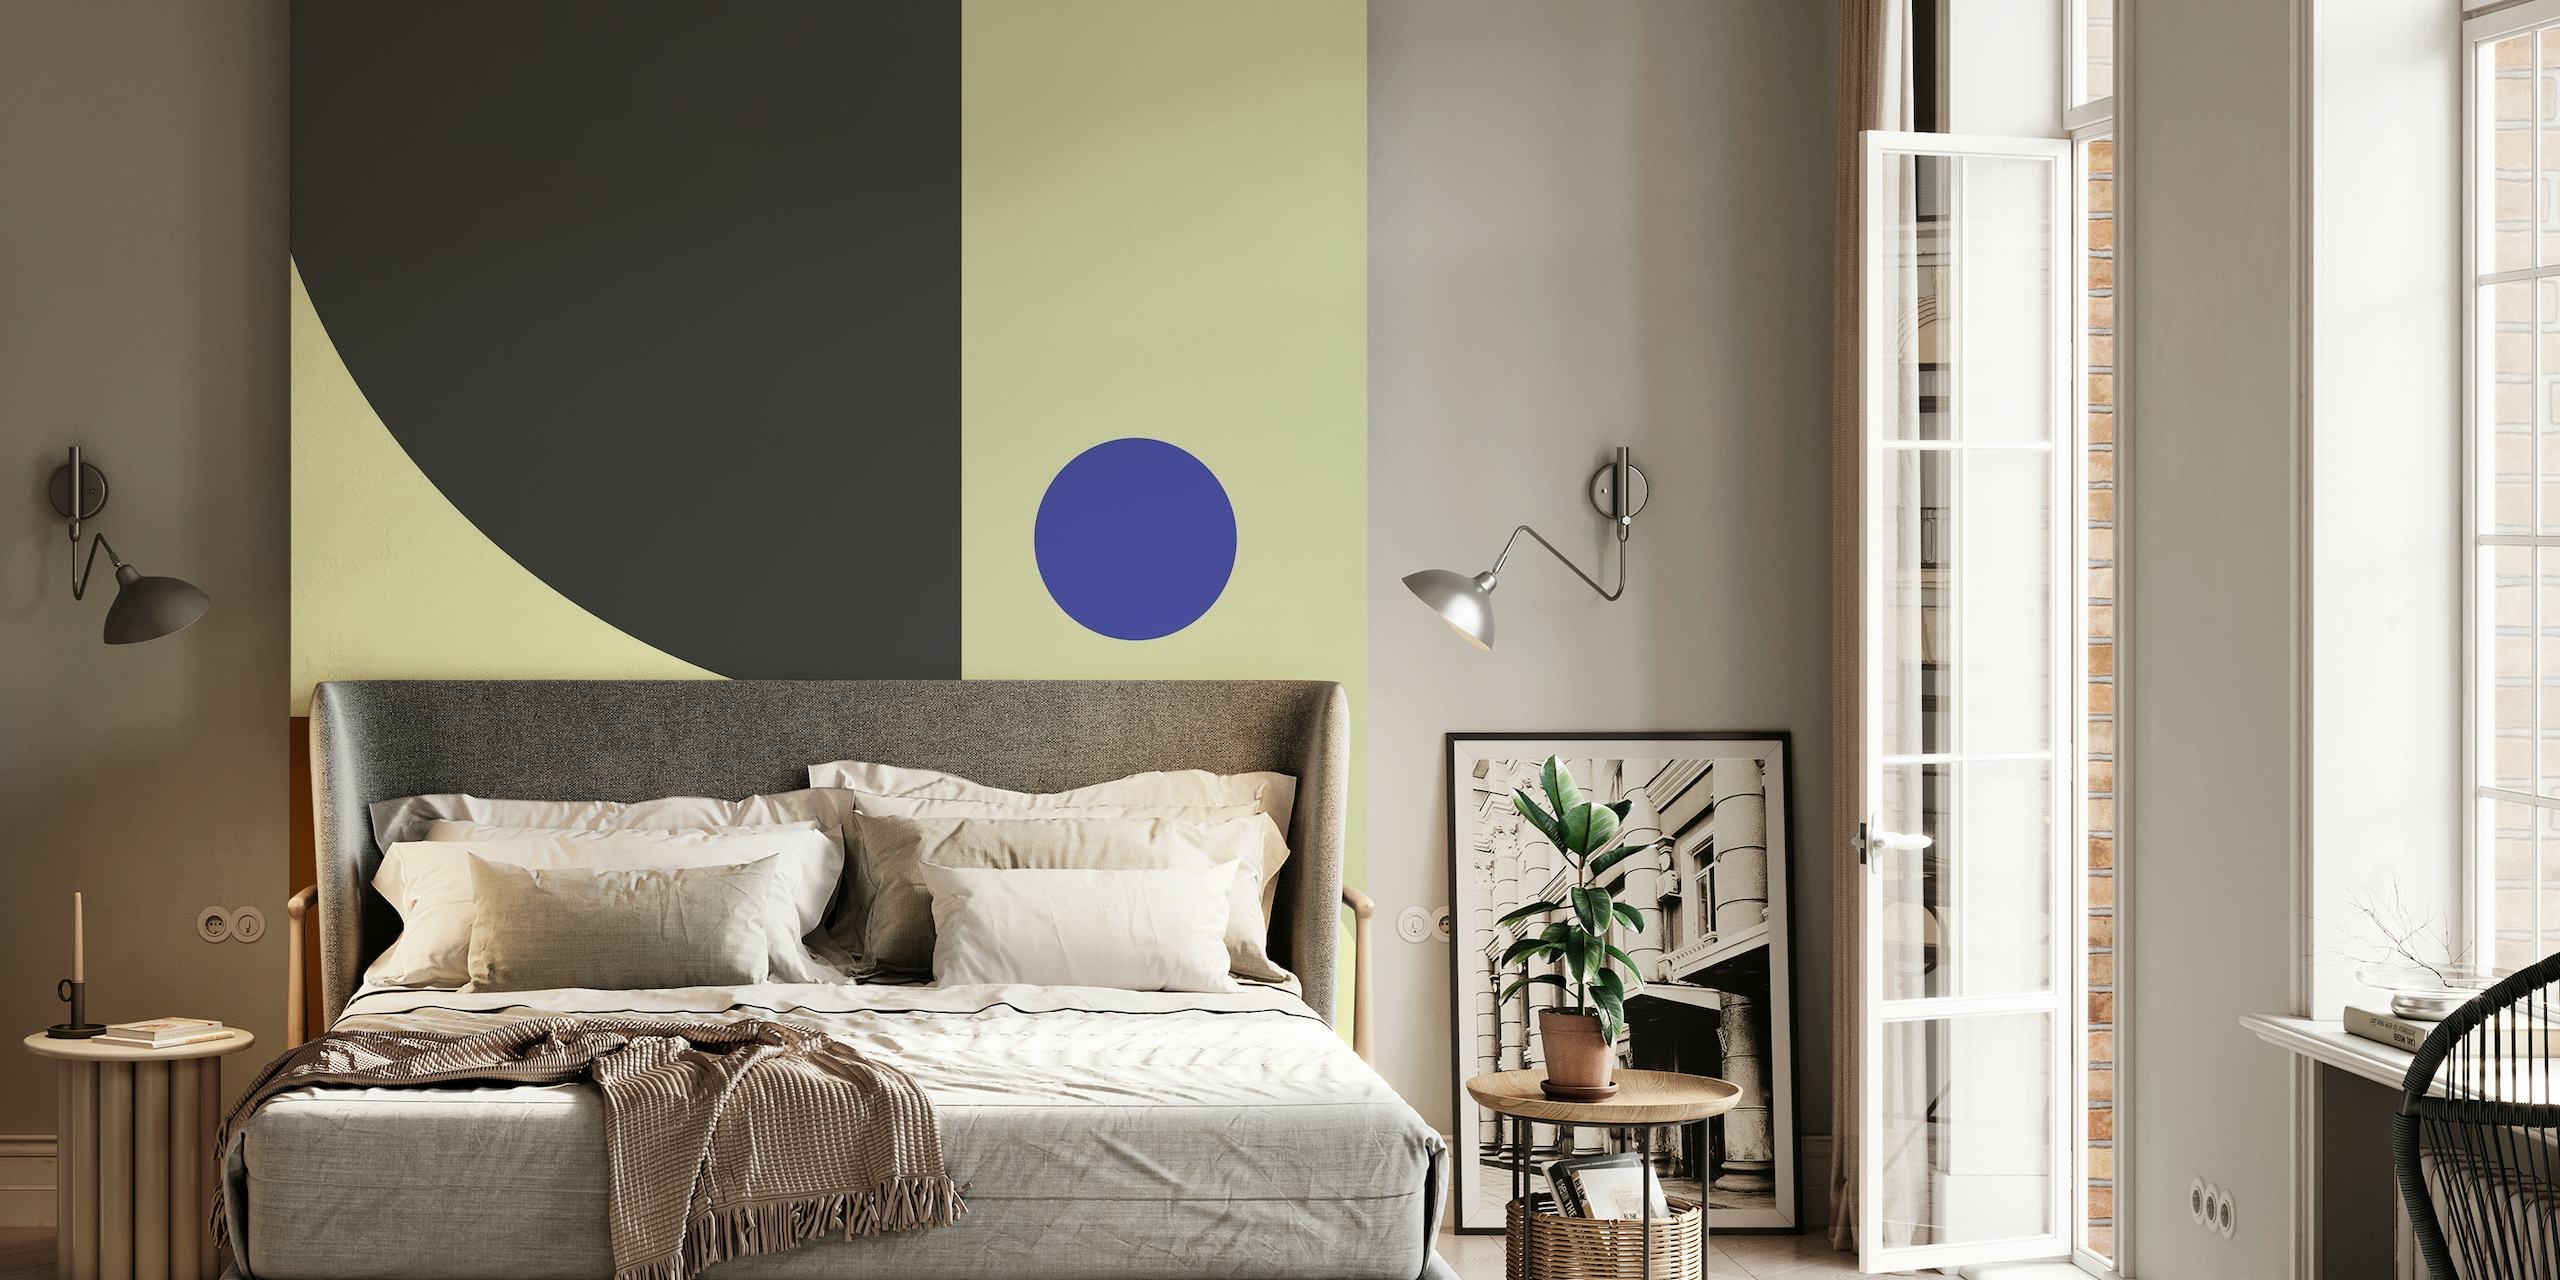 Wandbild mit abstrakten geometrischen Formen in Creme-, Marineblau- und warmen Erdtönen